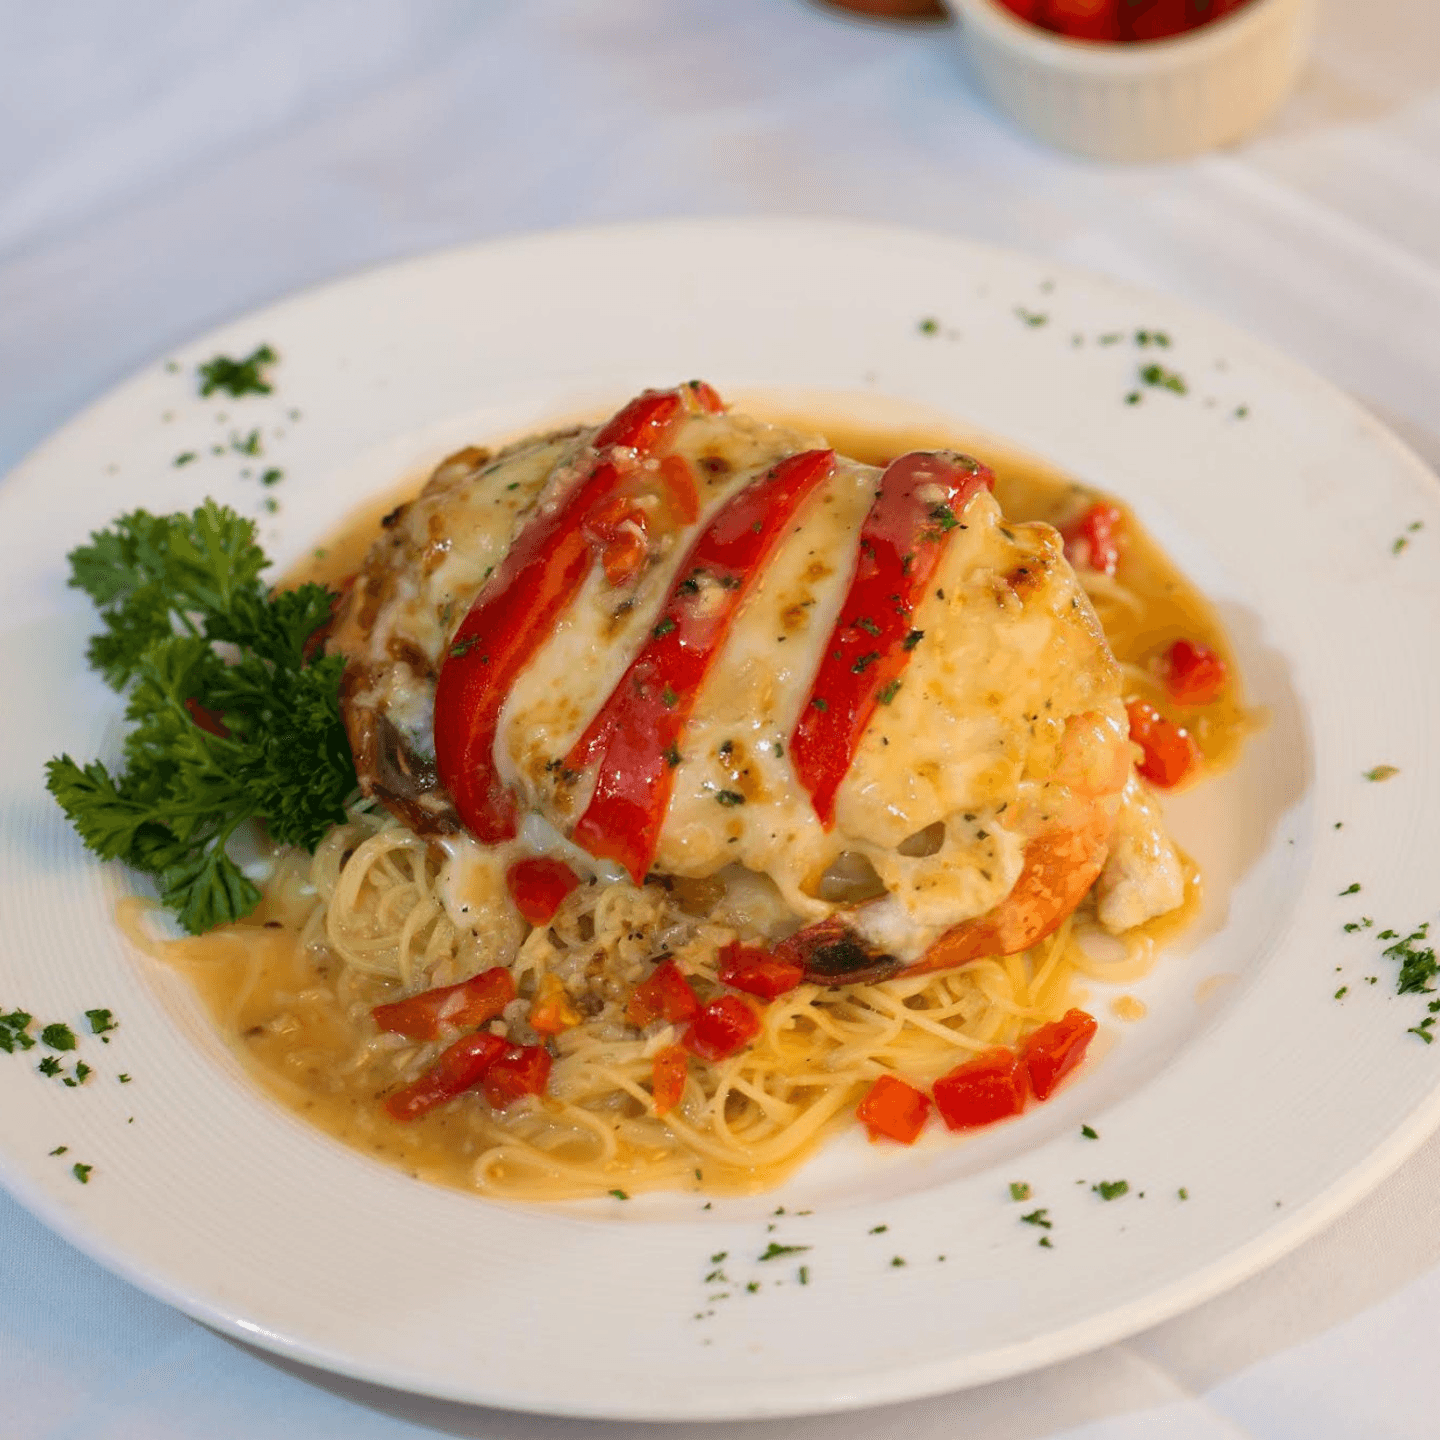 Twirl into Taste - Chicken Mediterranean